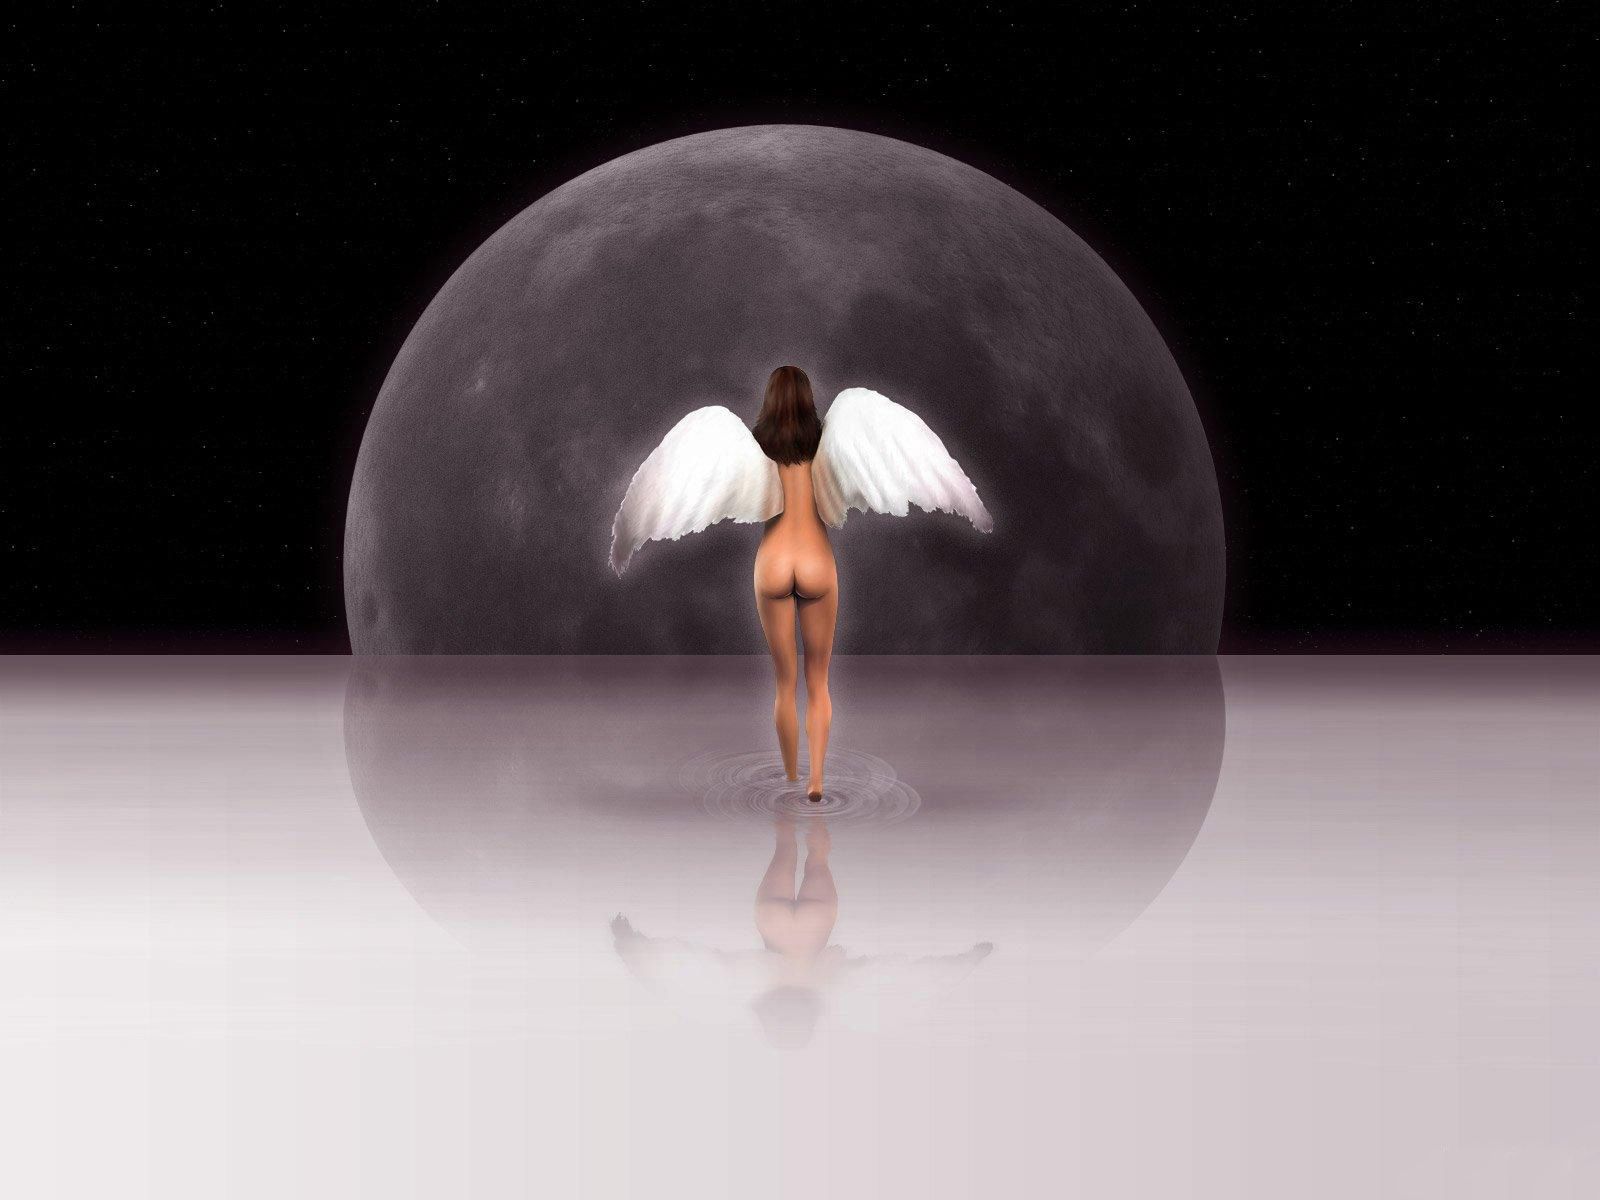 нарисованная девушка, толстопопый ангелочек на фоне луны